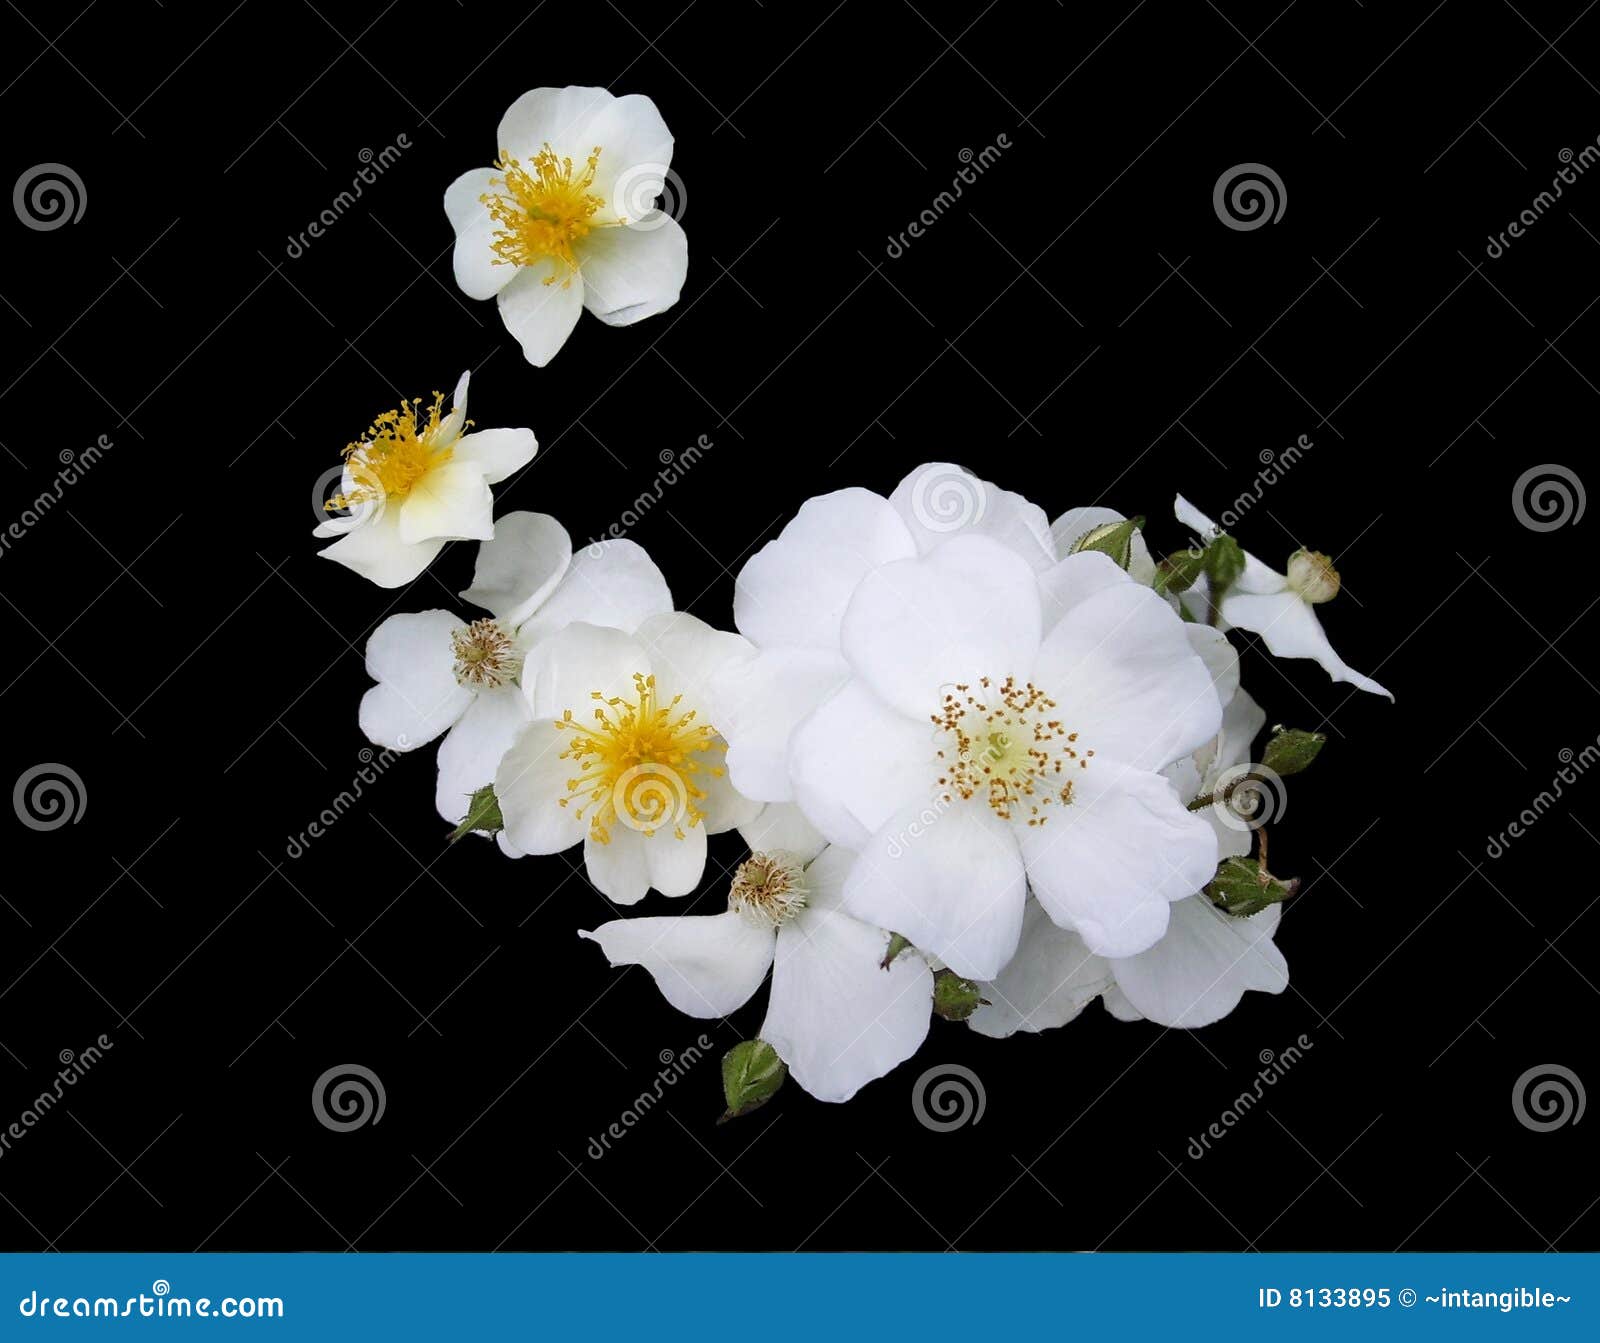 white cherokee roses